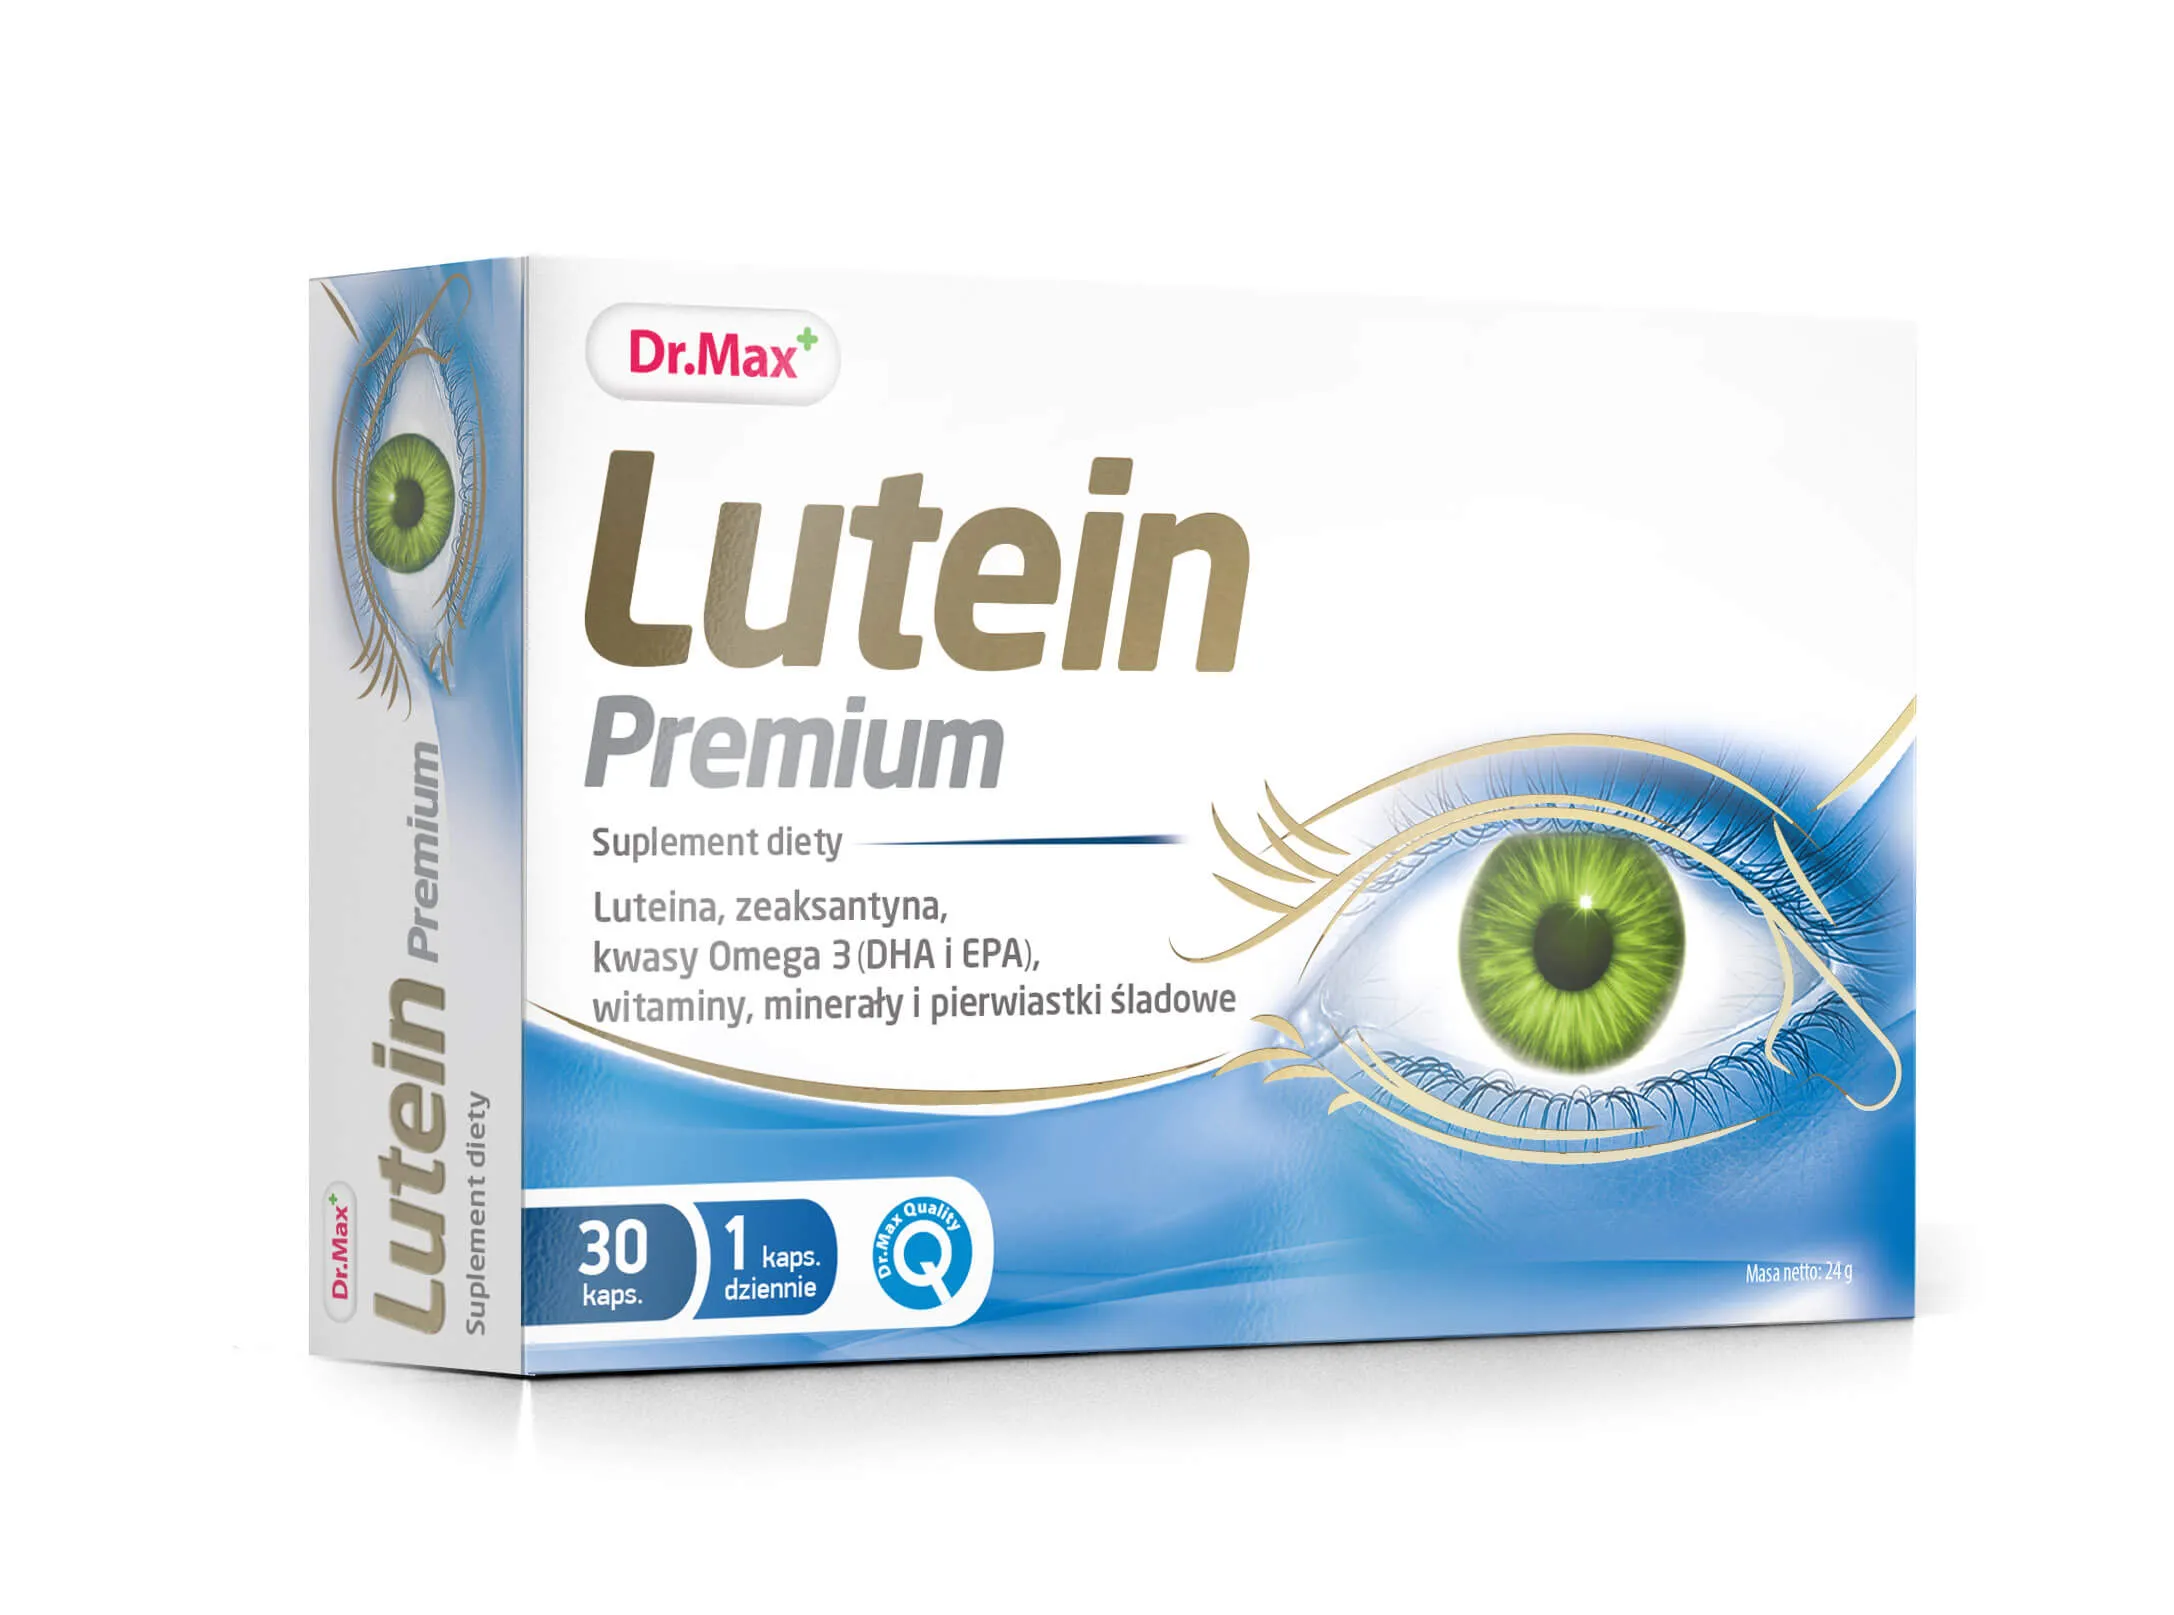 Lutein Premium Dr.Max, suplement diety, 30 kapsułek